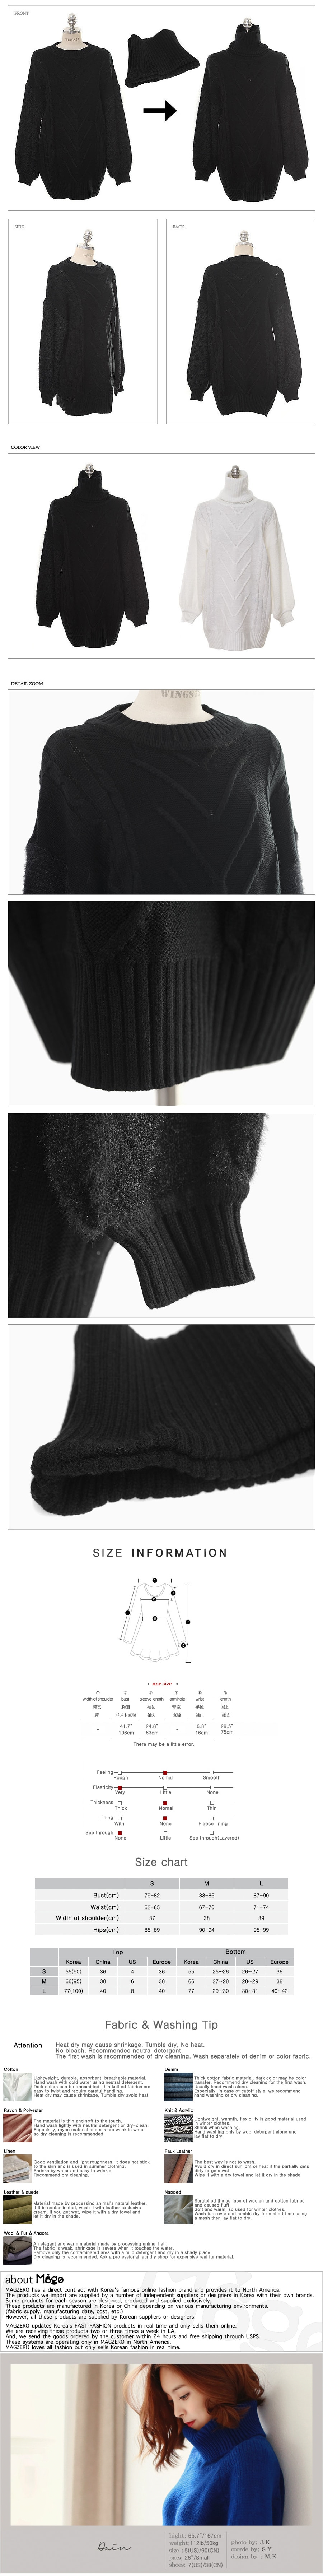 MAGZERO 【限量销售】 混羊毛编织毛衣带围脖 #白色 均码(S-M)